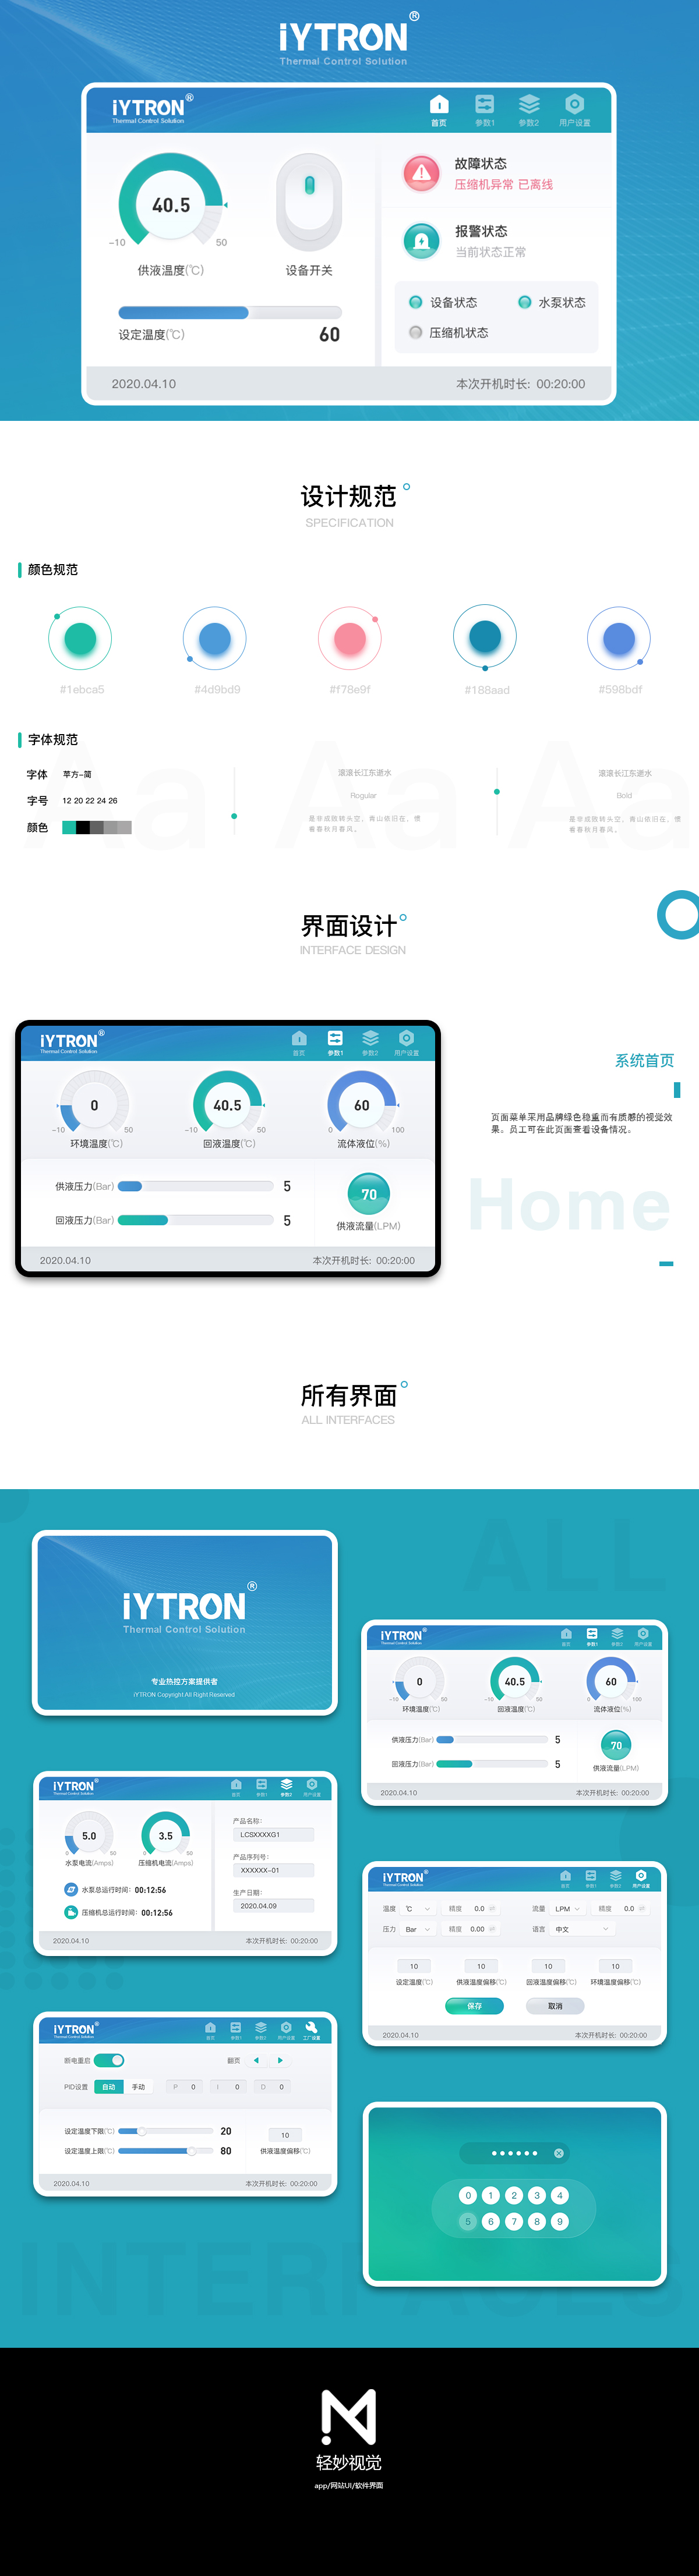 2021-4-16杨磊-莱创无锡冷却设备终端触摸屏UI设计5.jpg